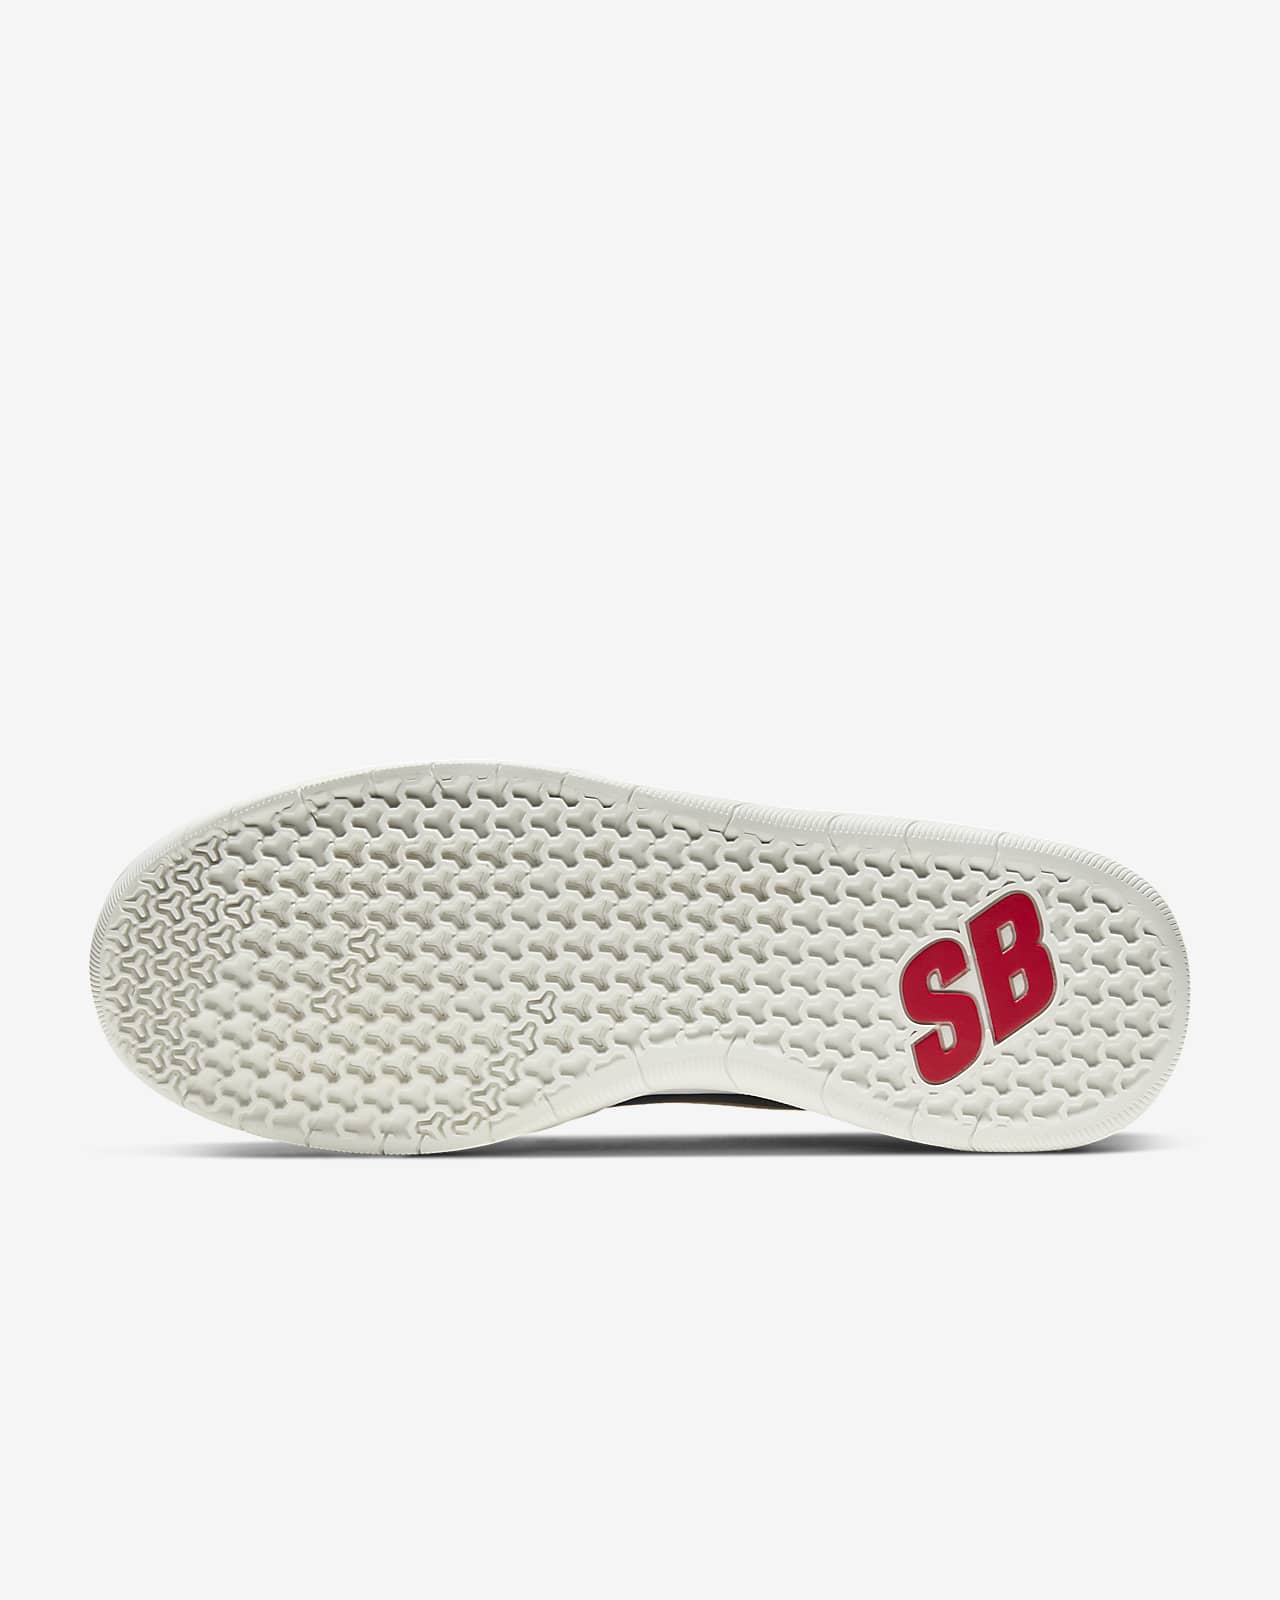 Nike SB Nyjah Free Shoes.